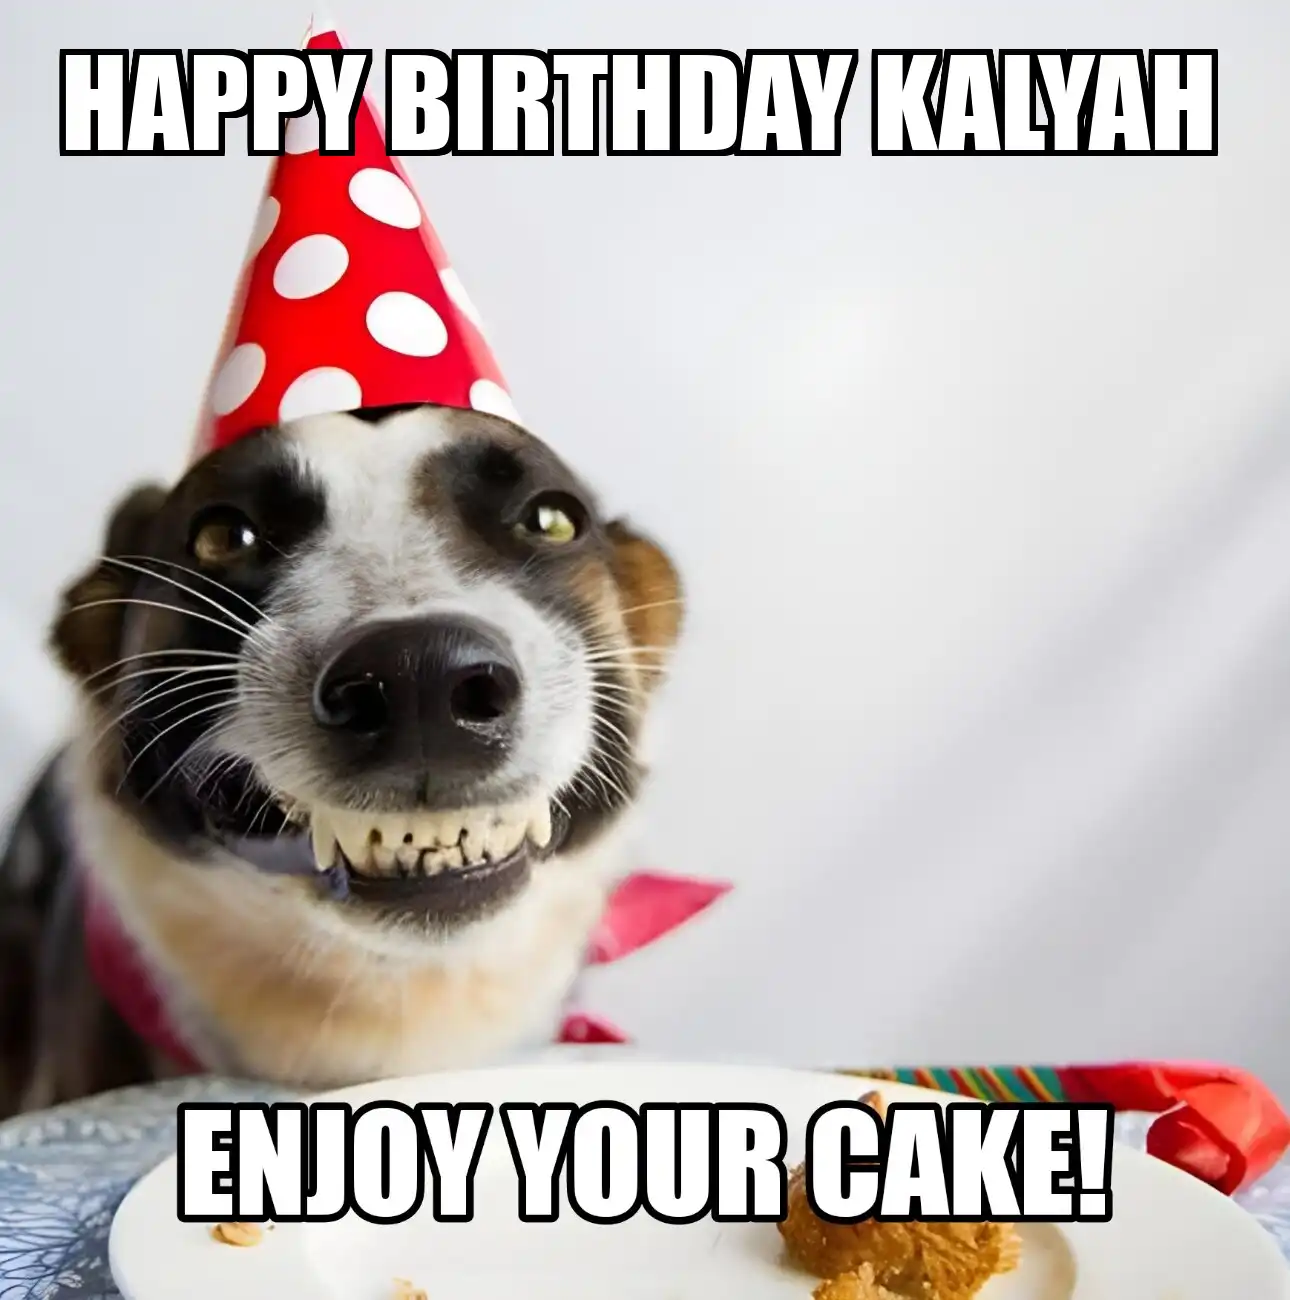 Happy Birthday Kalyah Enjoy Your Cake Dog Meme